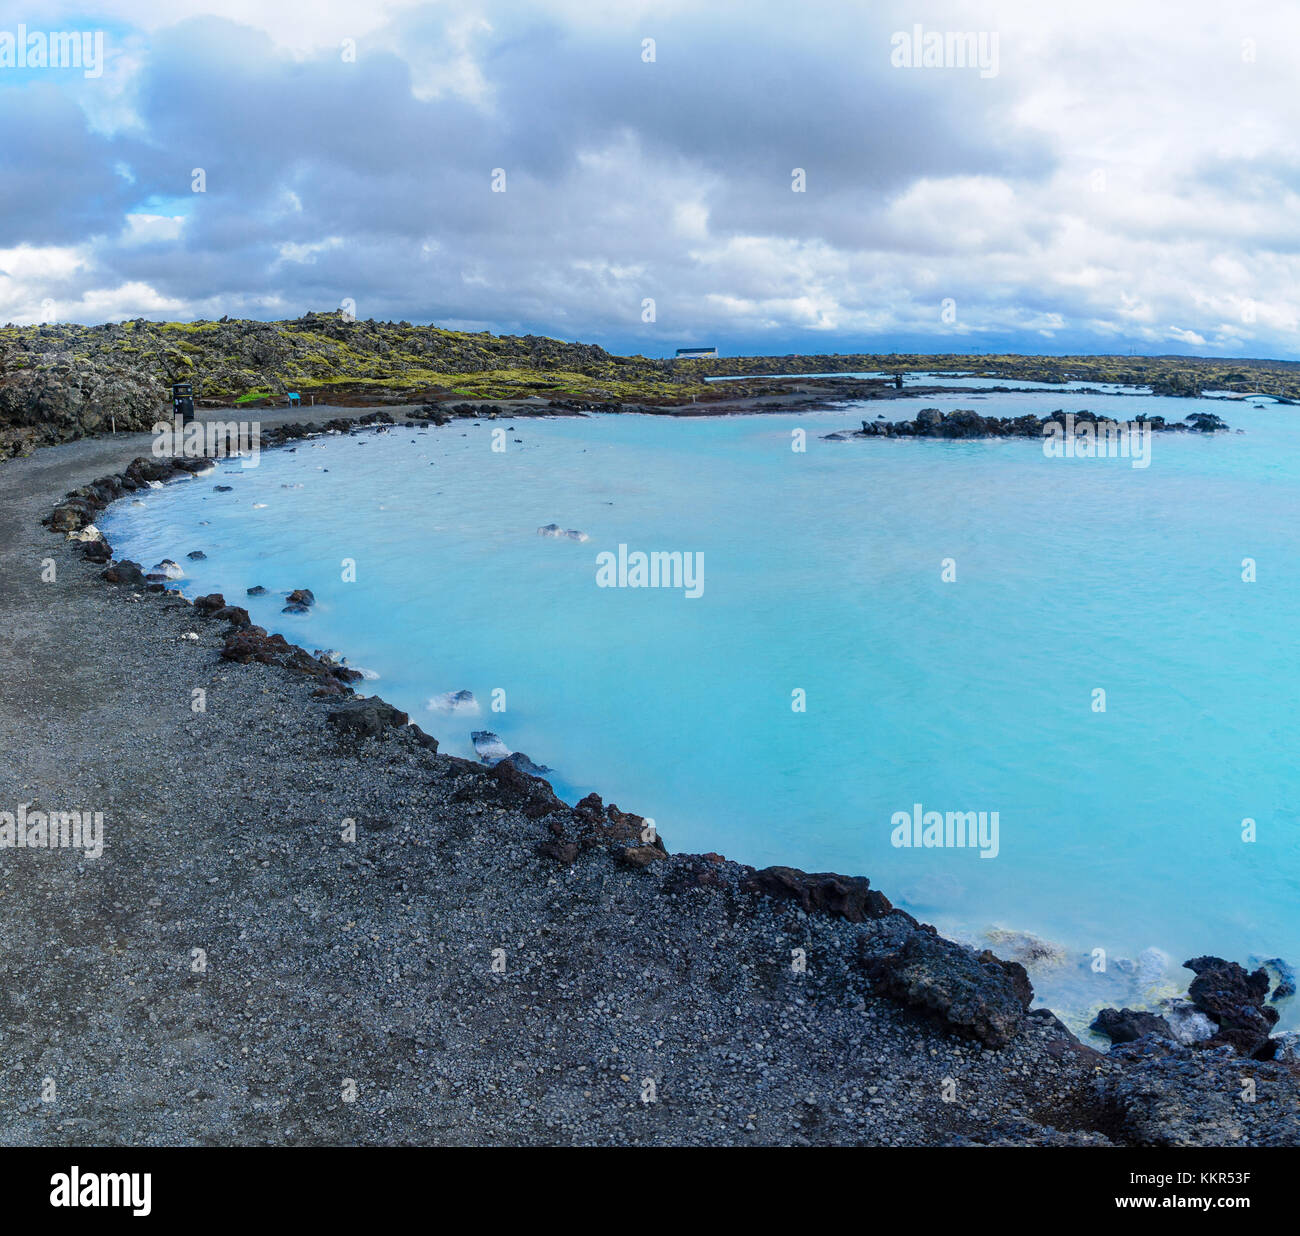 Paysage volcanique et piscines d'eau chaude près du lagon bleu, dans un champ de lave en grindavik sur la péninsule de Reykjanes, au sud-ouest de l'islande Banque D'Images